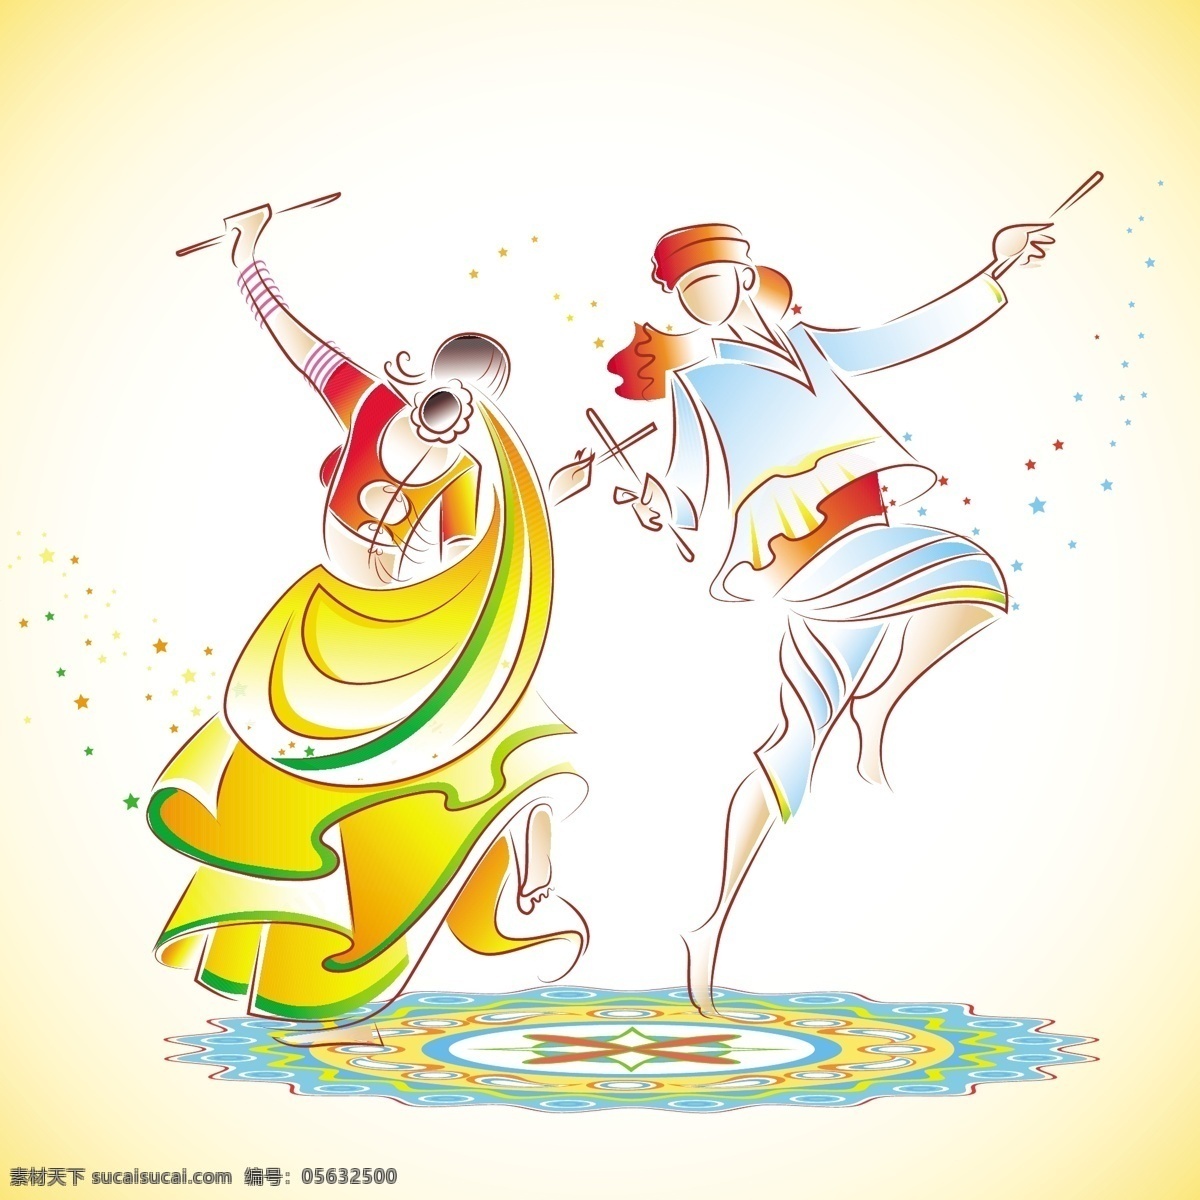 印度文化节日 印度歌舞 印度 印度文化 印度节日 印度风情 印度宗教 宗教信仰 文化艺术